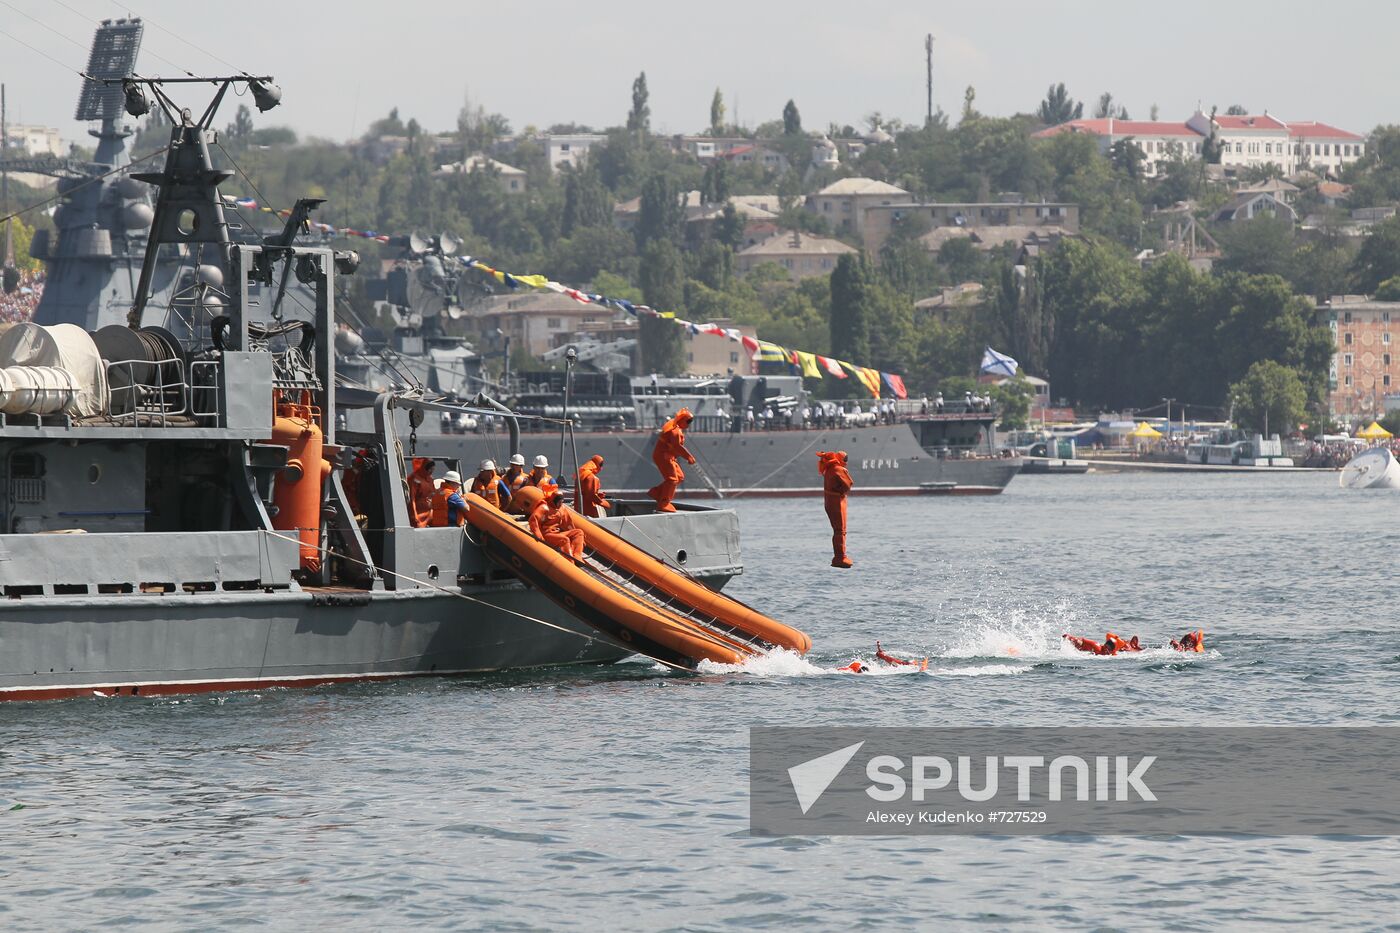 Russian Navy Day celebration in Sevastopol